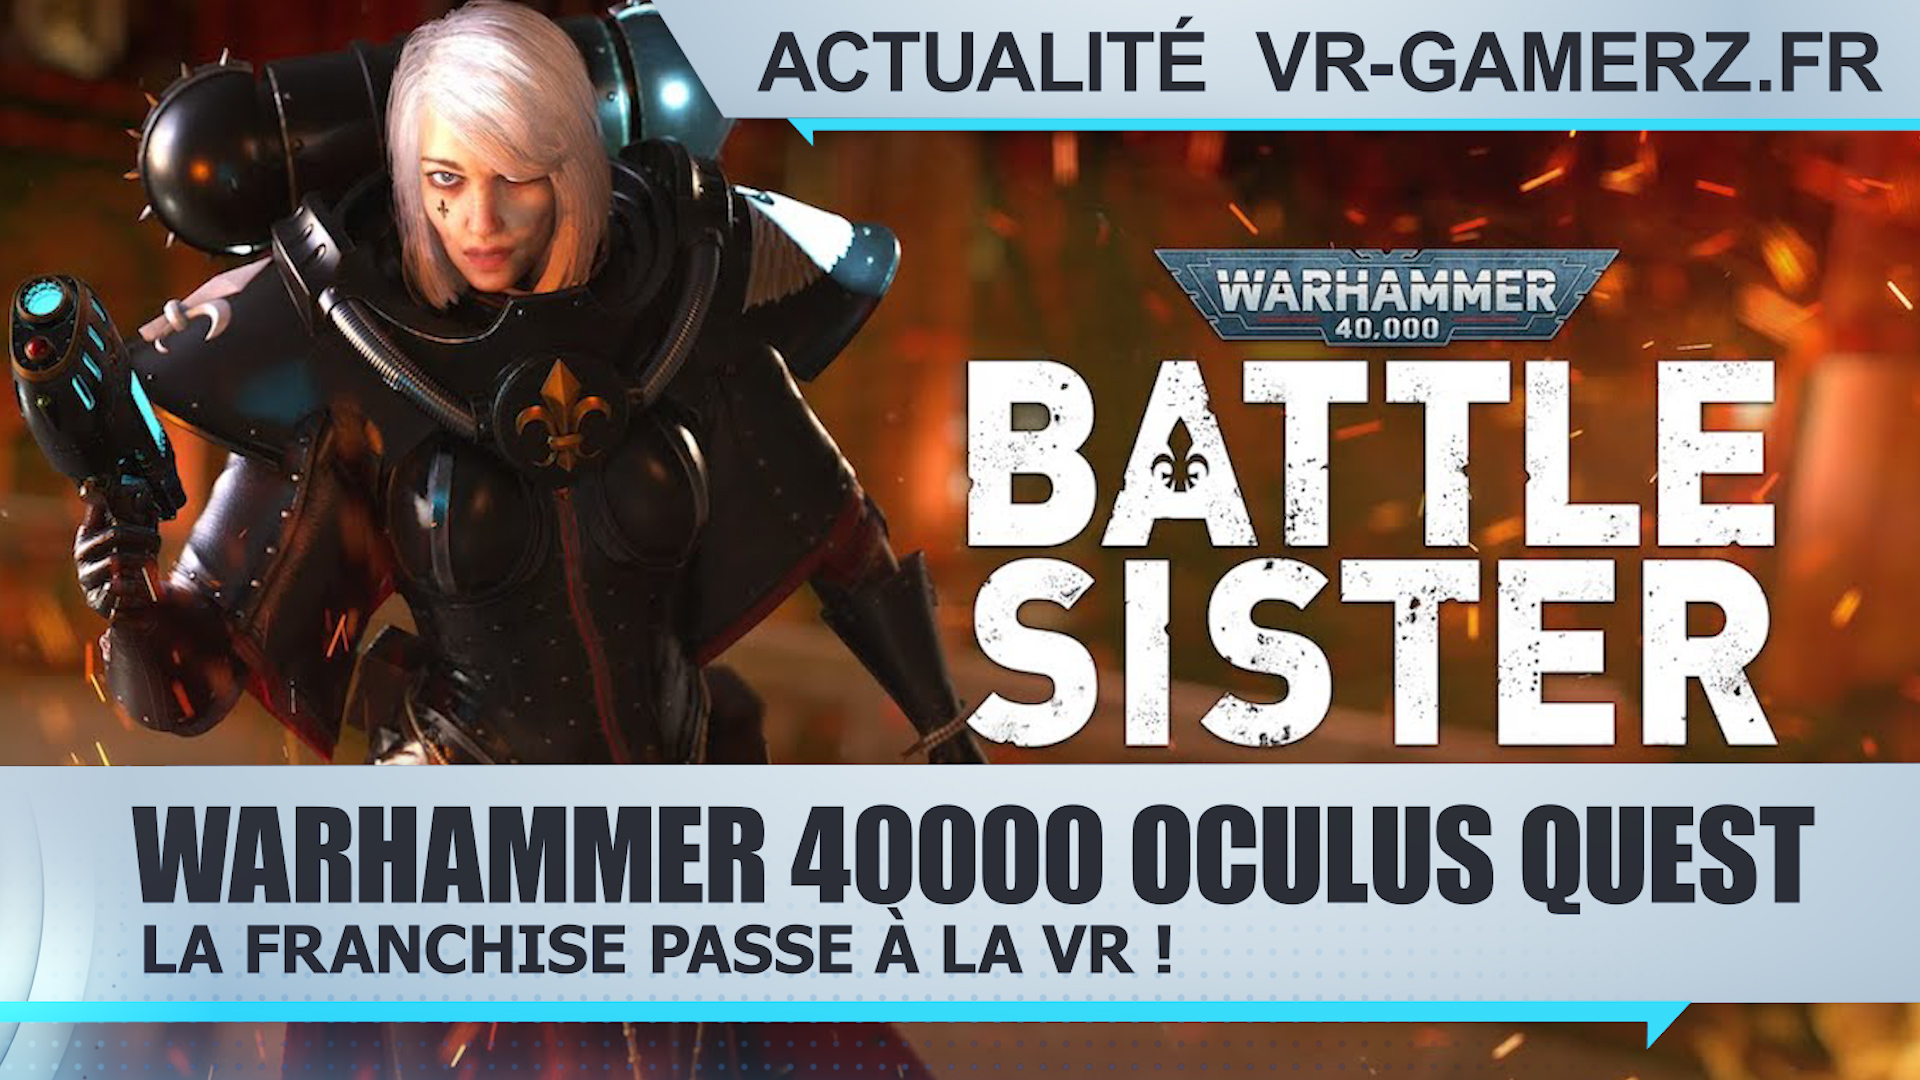 Warhammer 40000 Oculus quest : La franchise passe à la VR !